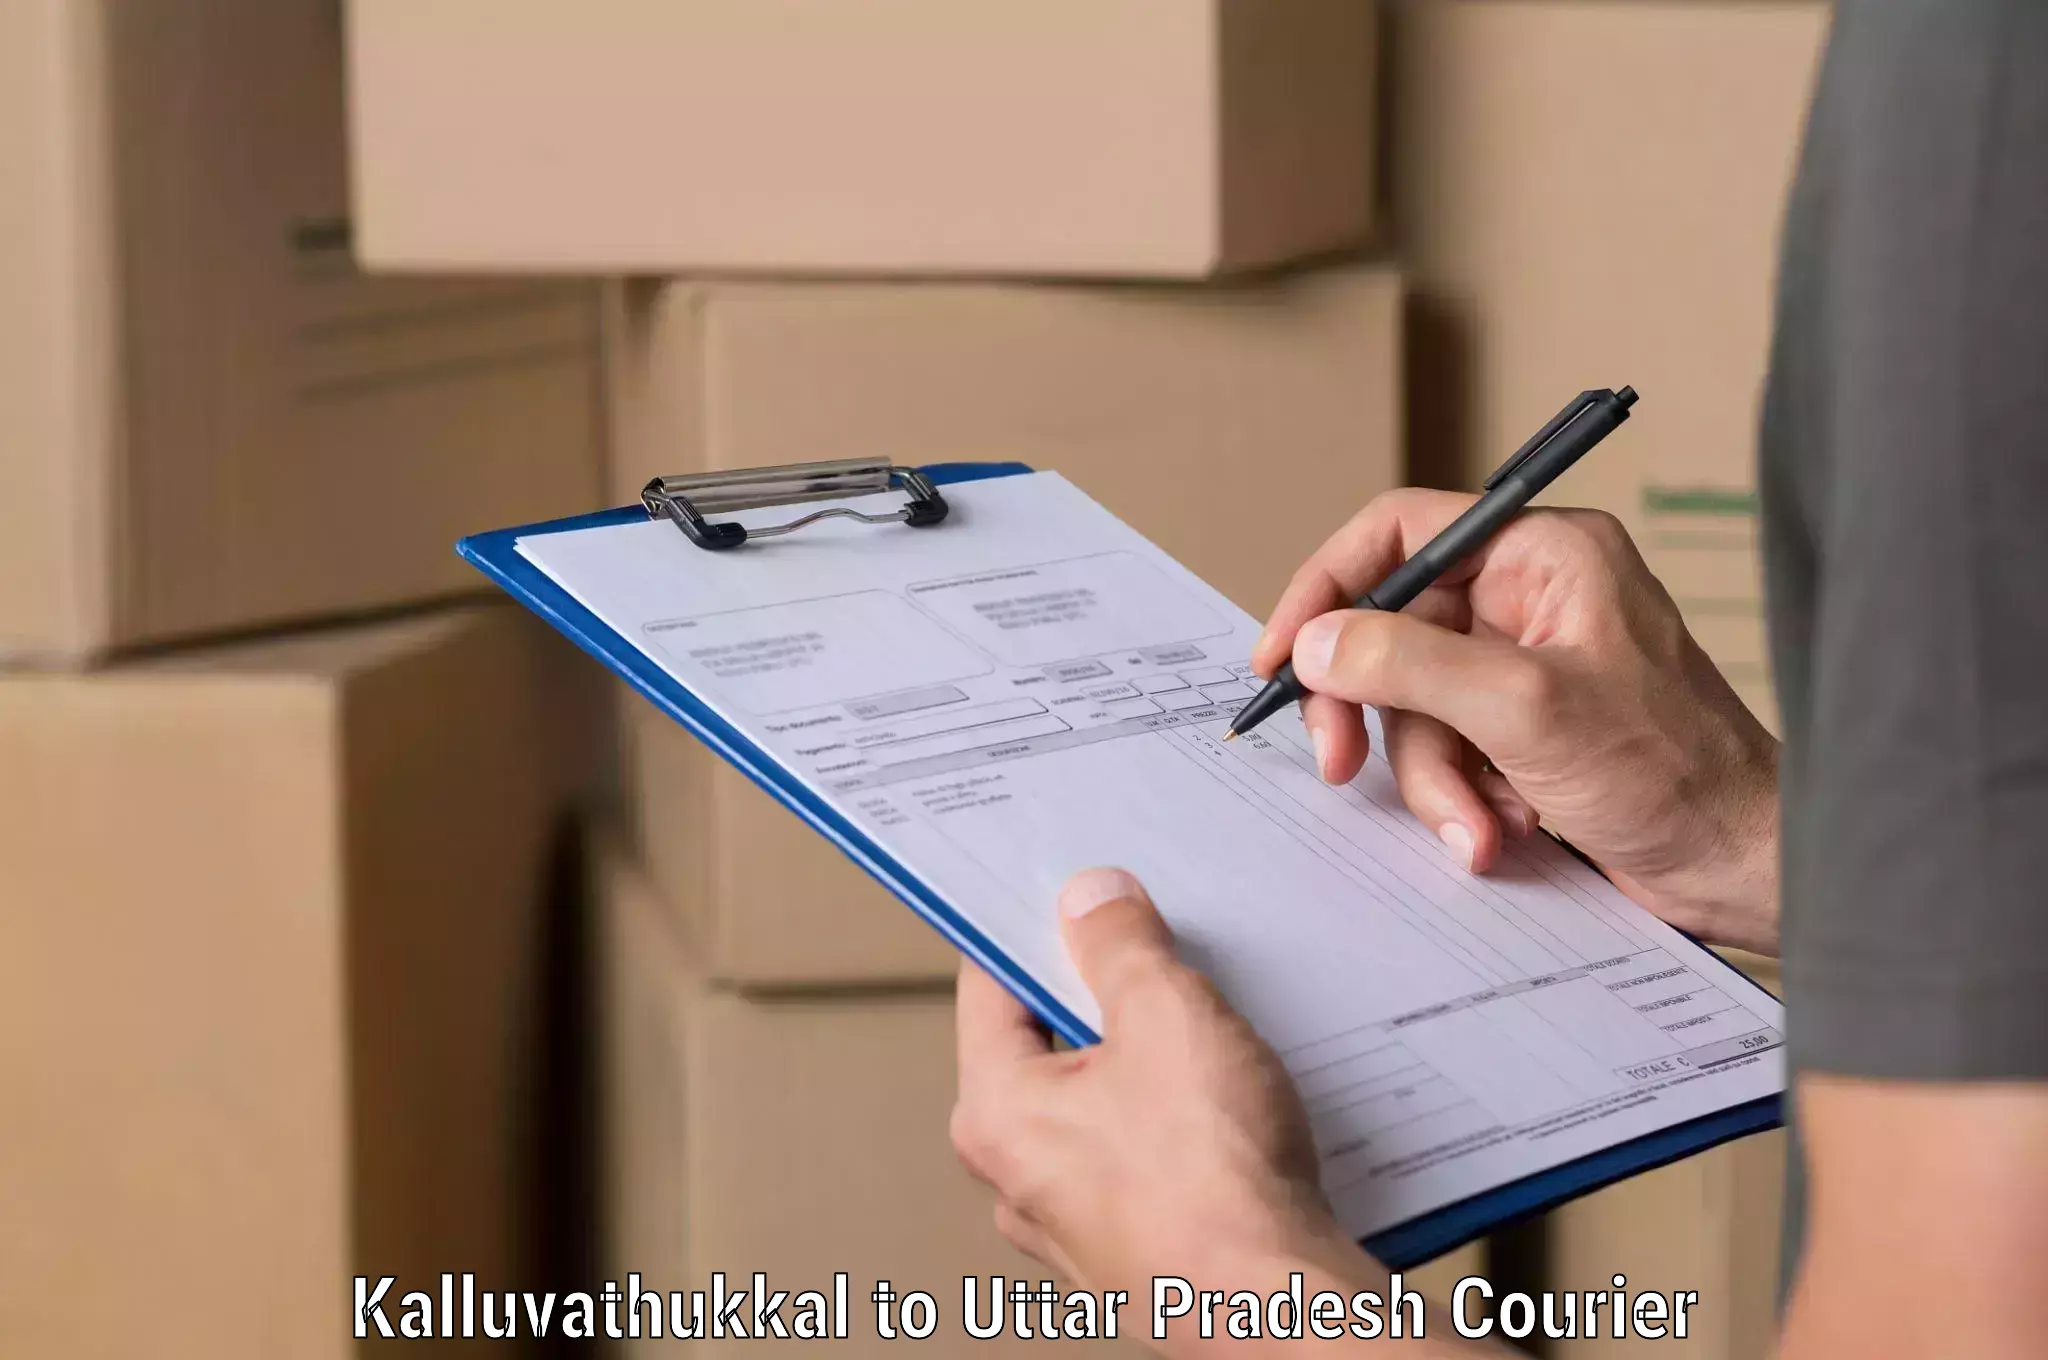 State-of-the-art courier technology Kalluvathukkal to Varanasi